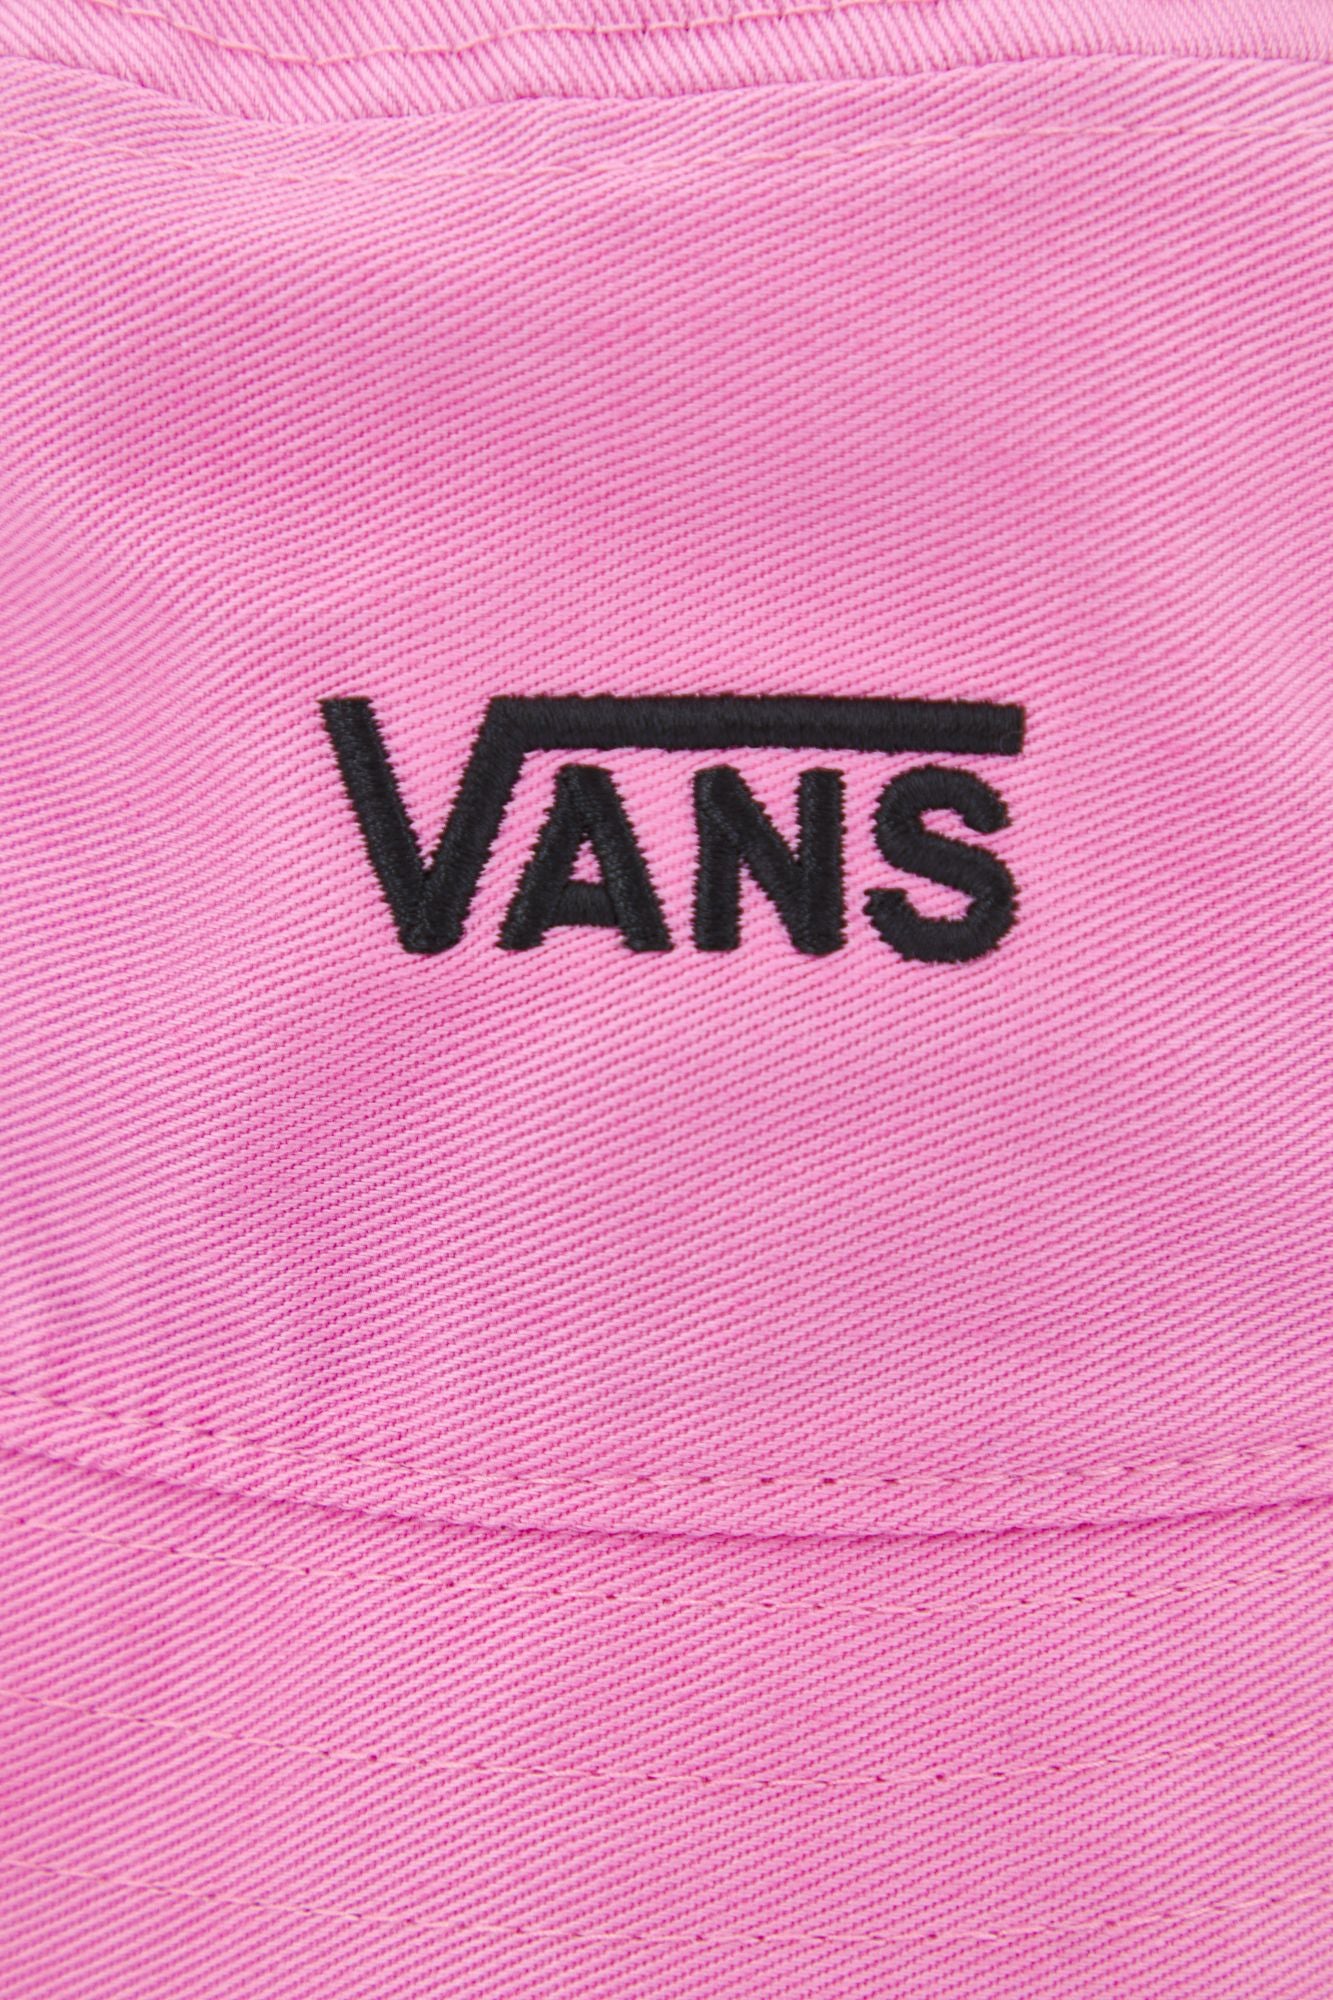 VANS HANKLEY BUCKET HAT en color ROSA (4)